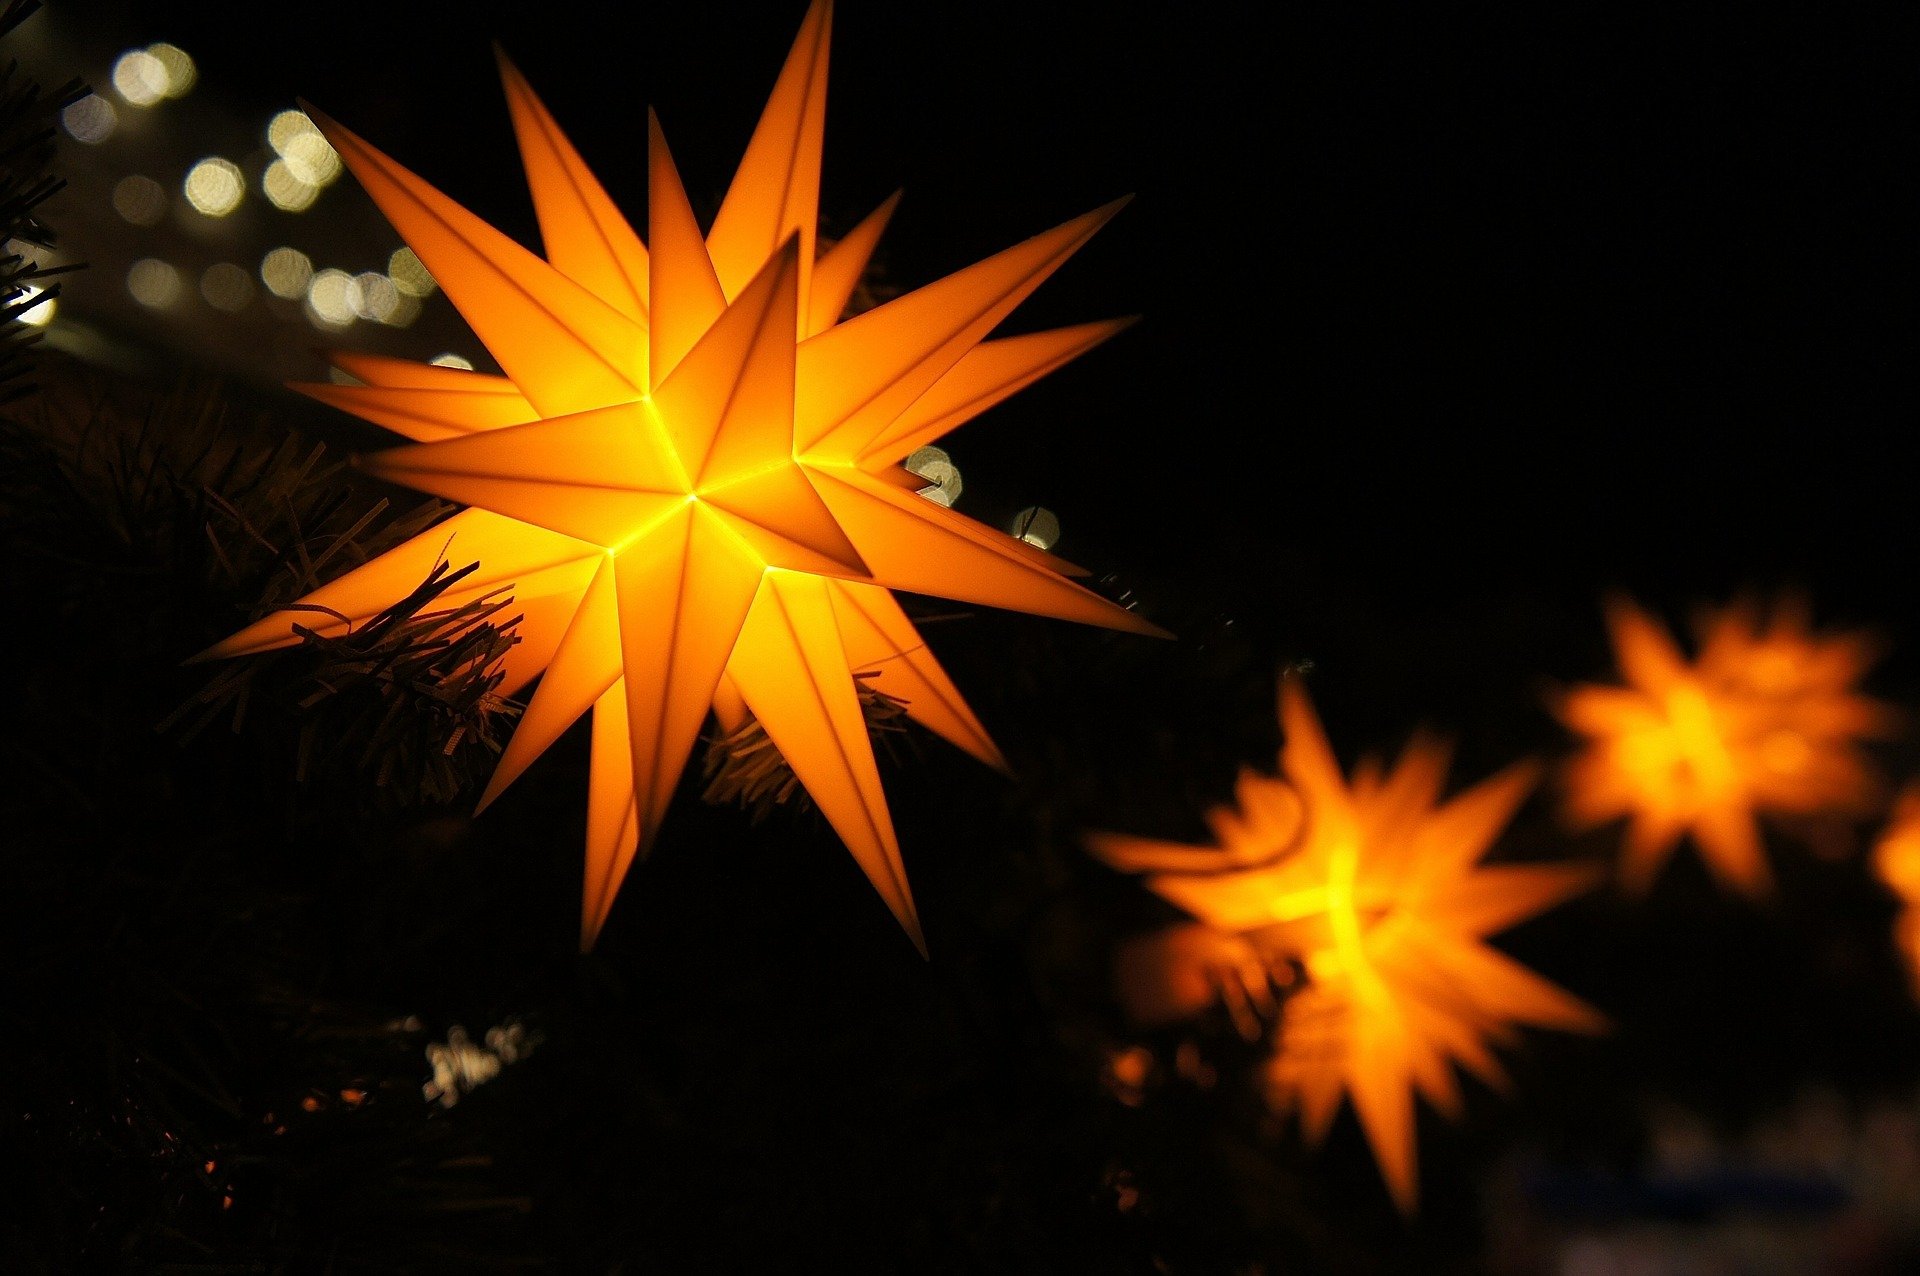 Sterne erhellen das Dunkle zu Weihnachten